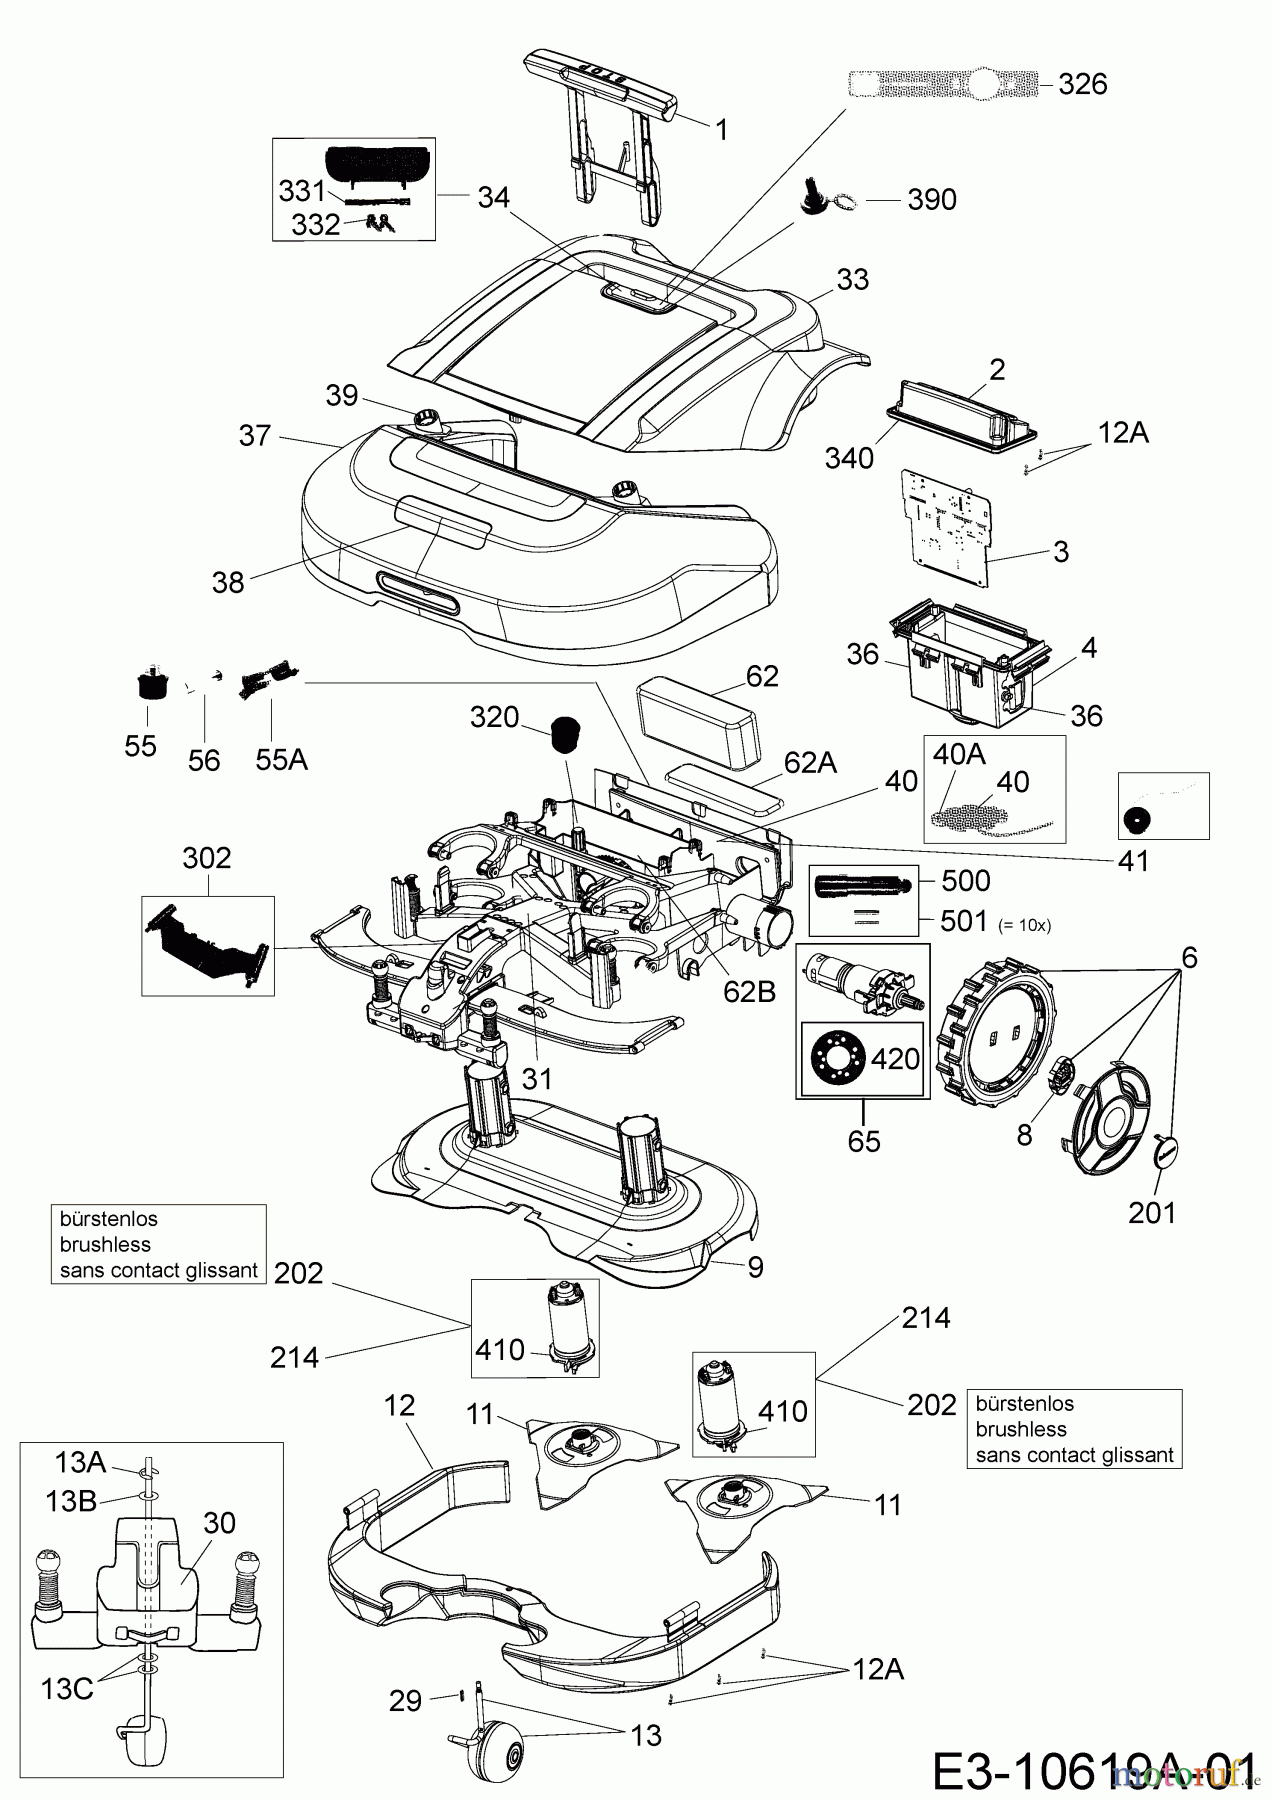  Robomow Mähroboter RS615U PRD6100YG  (2017) Elektromotore, Gehäuse, Messer, Räder